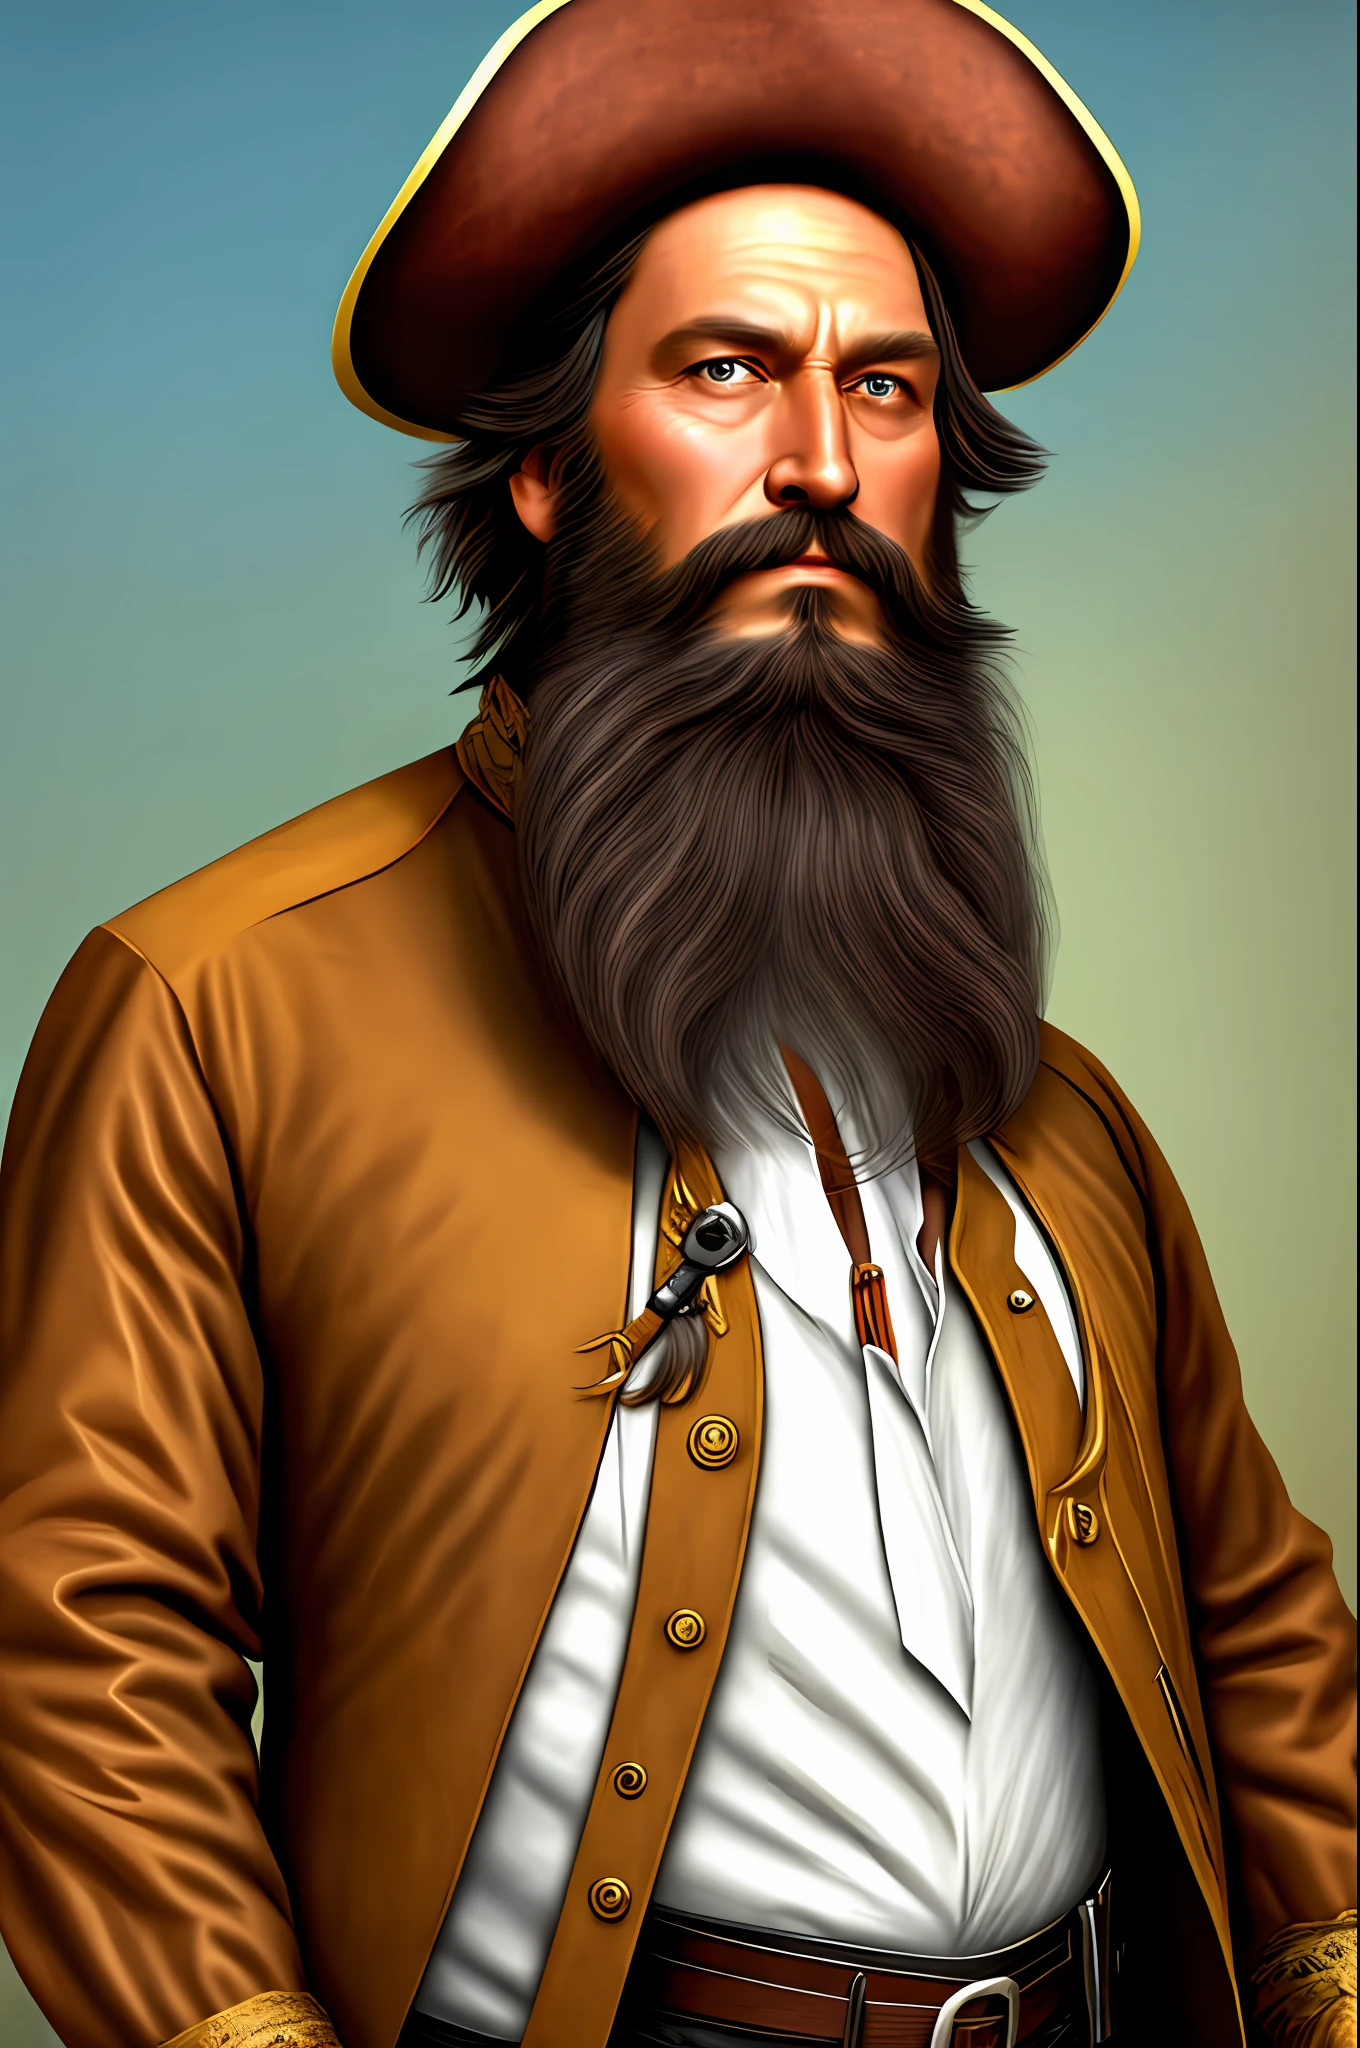 Mann, amerikanisch, langes braunes Haar, Pirat, großer Bart, Brünette, groß und relativ stark, Ein bisschen alt.